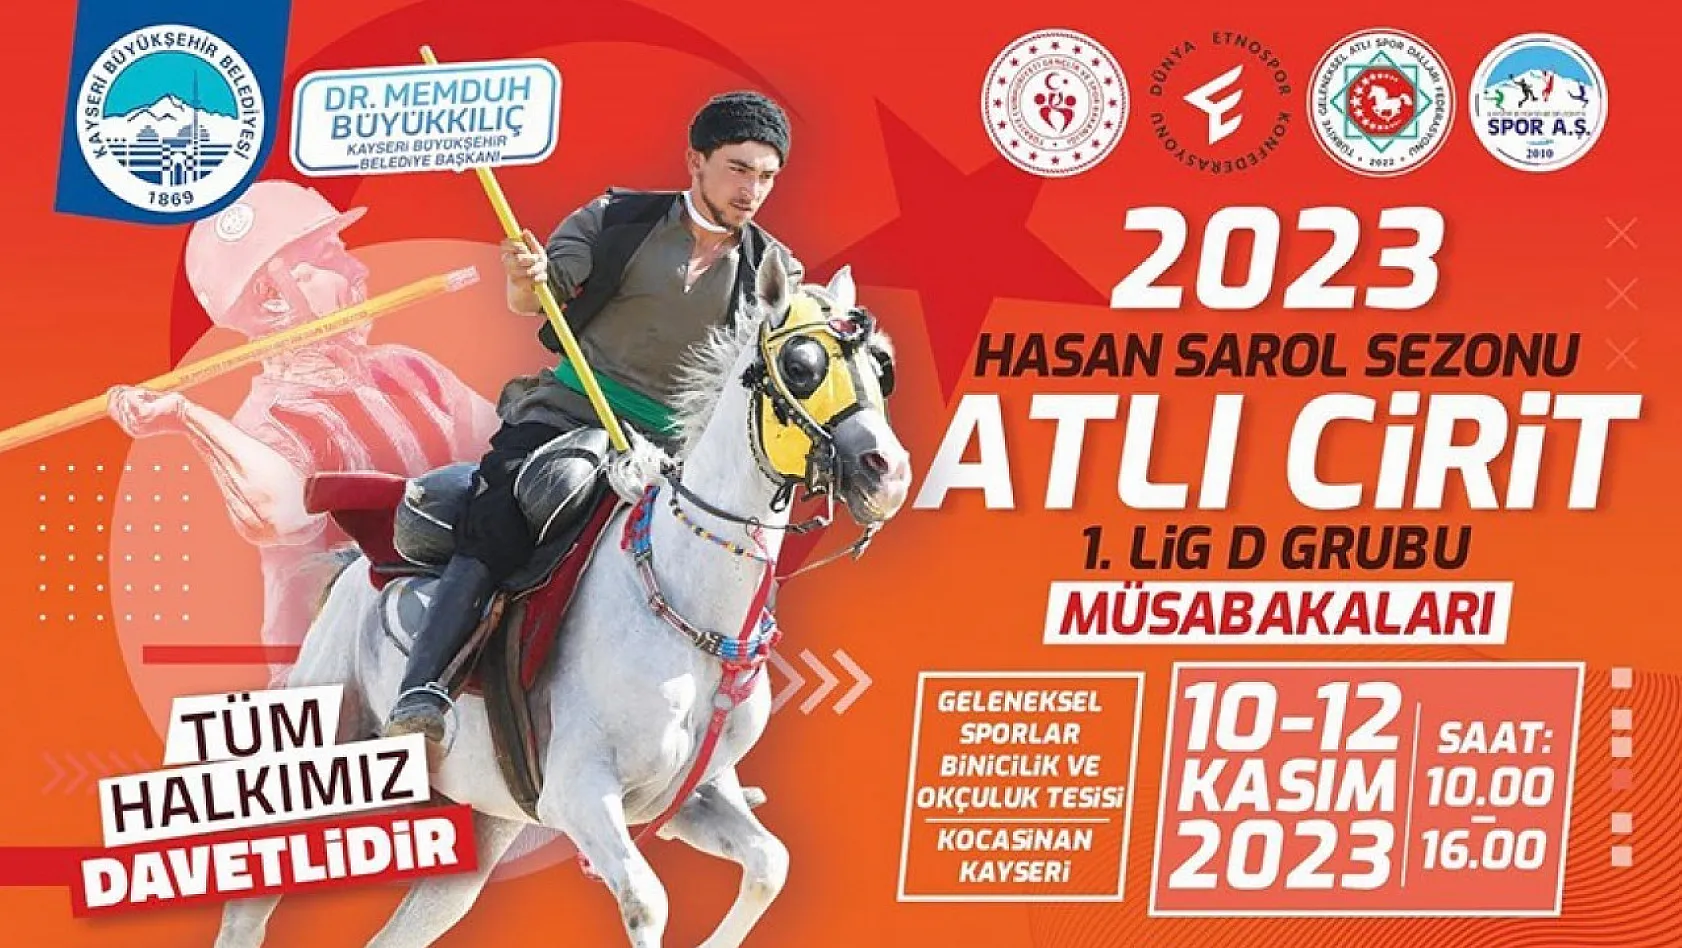 Atlı Cirit 1.Lig D Grubu müsabakaları Kayseri'de